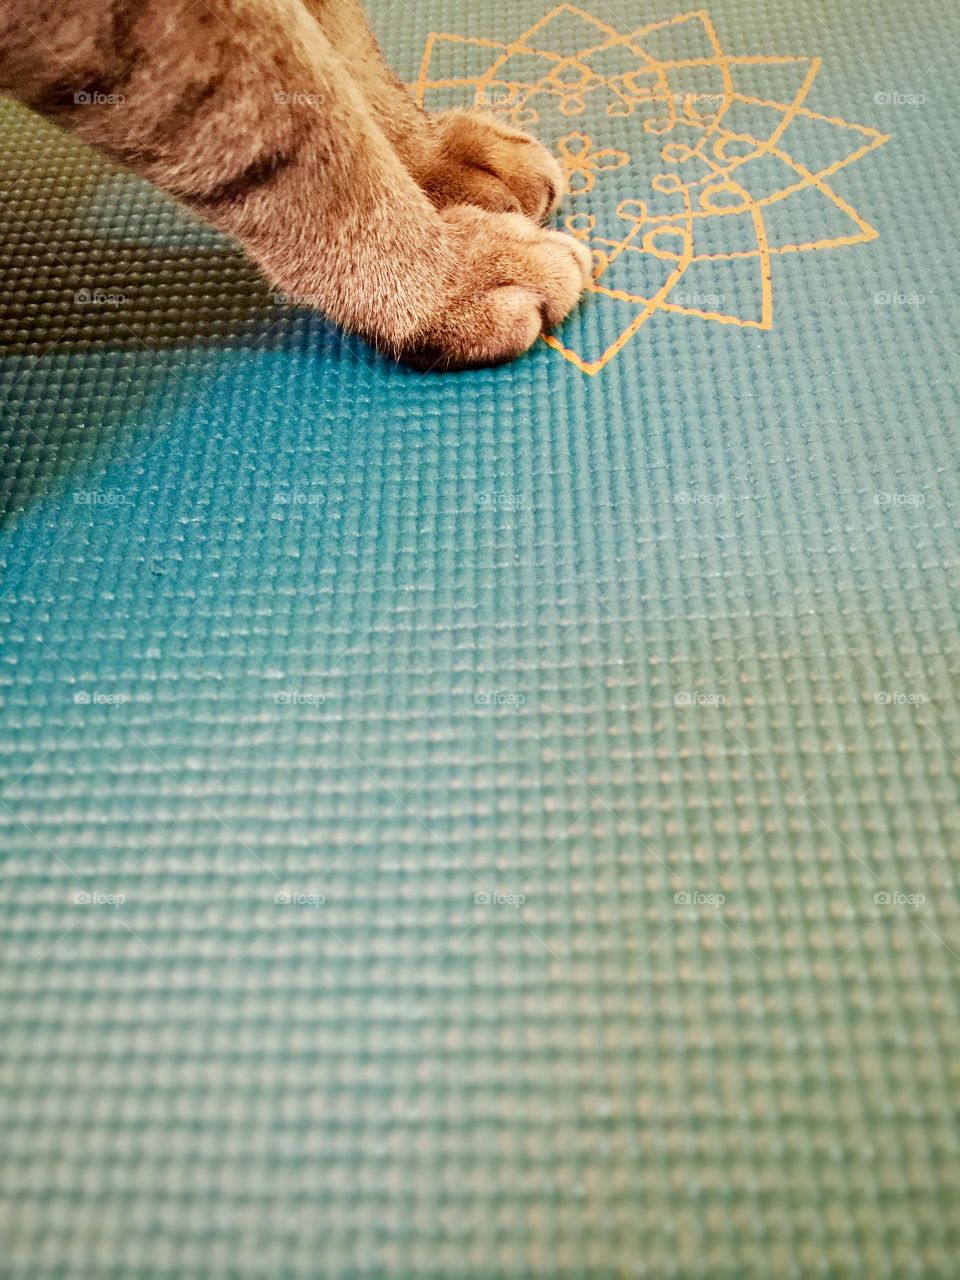 Yoga cat